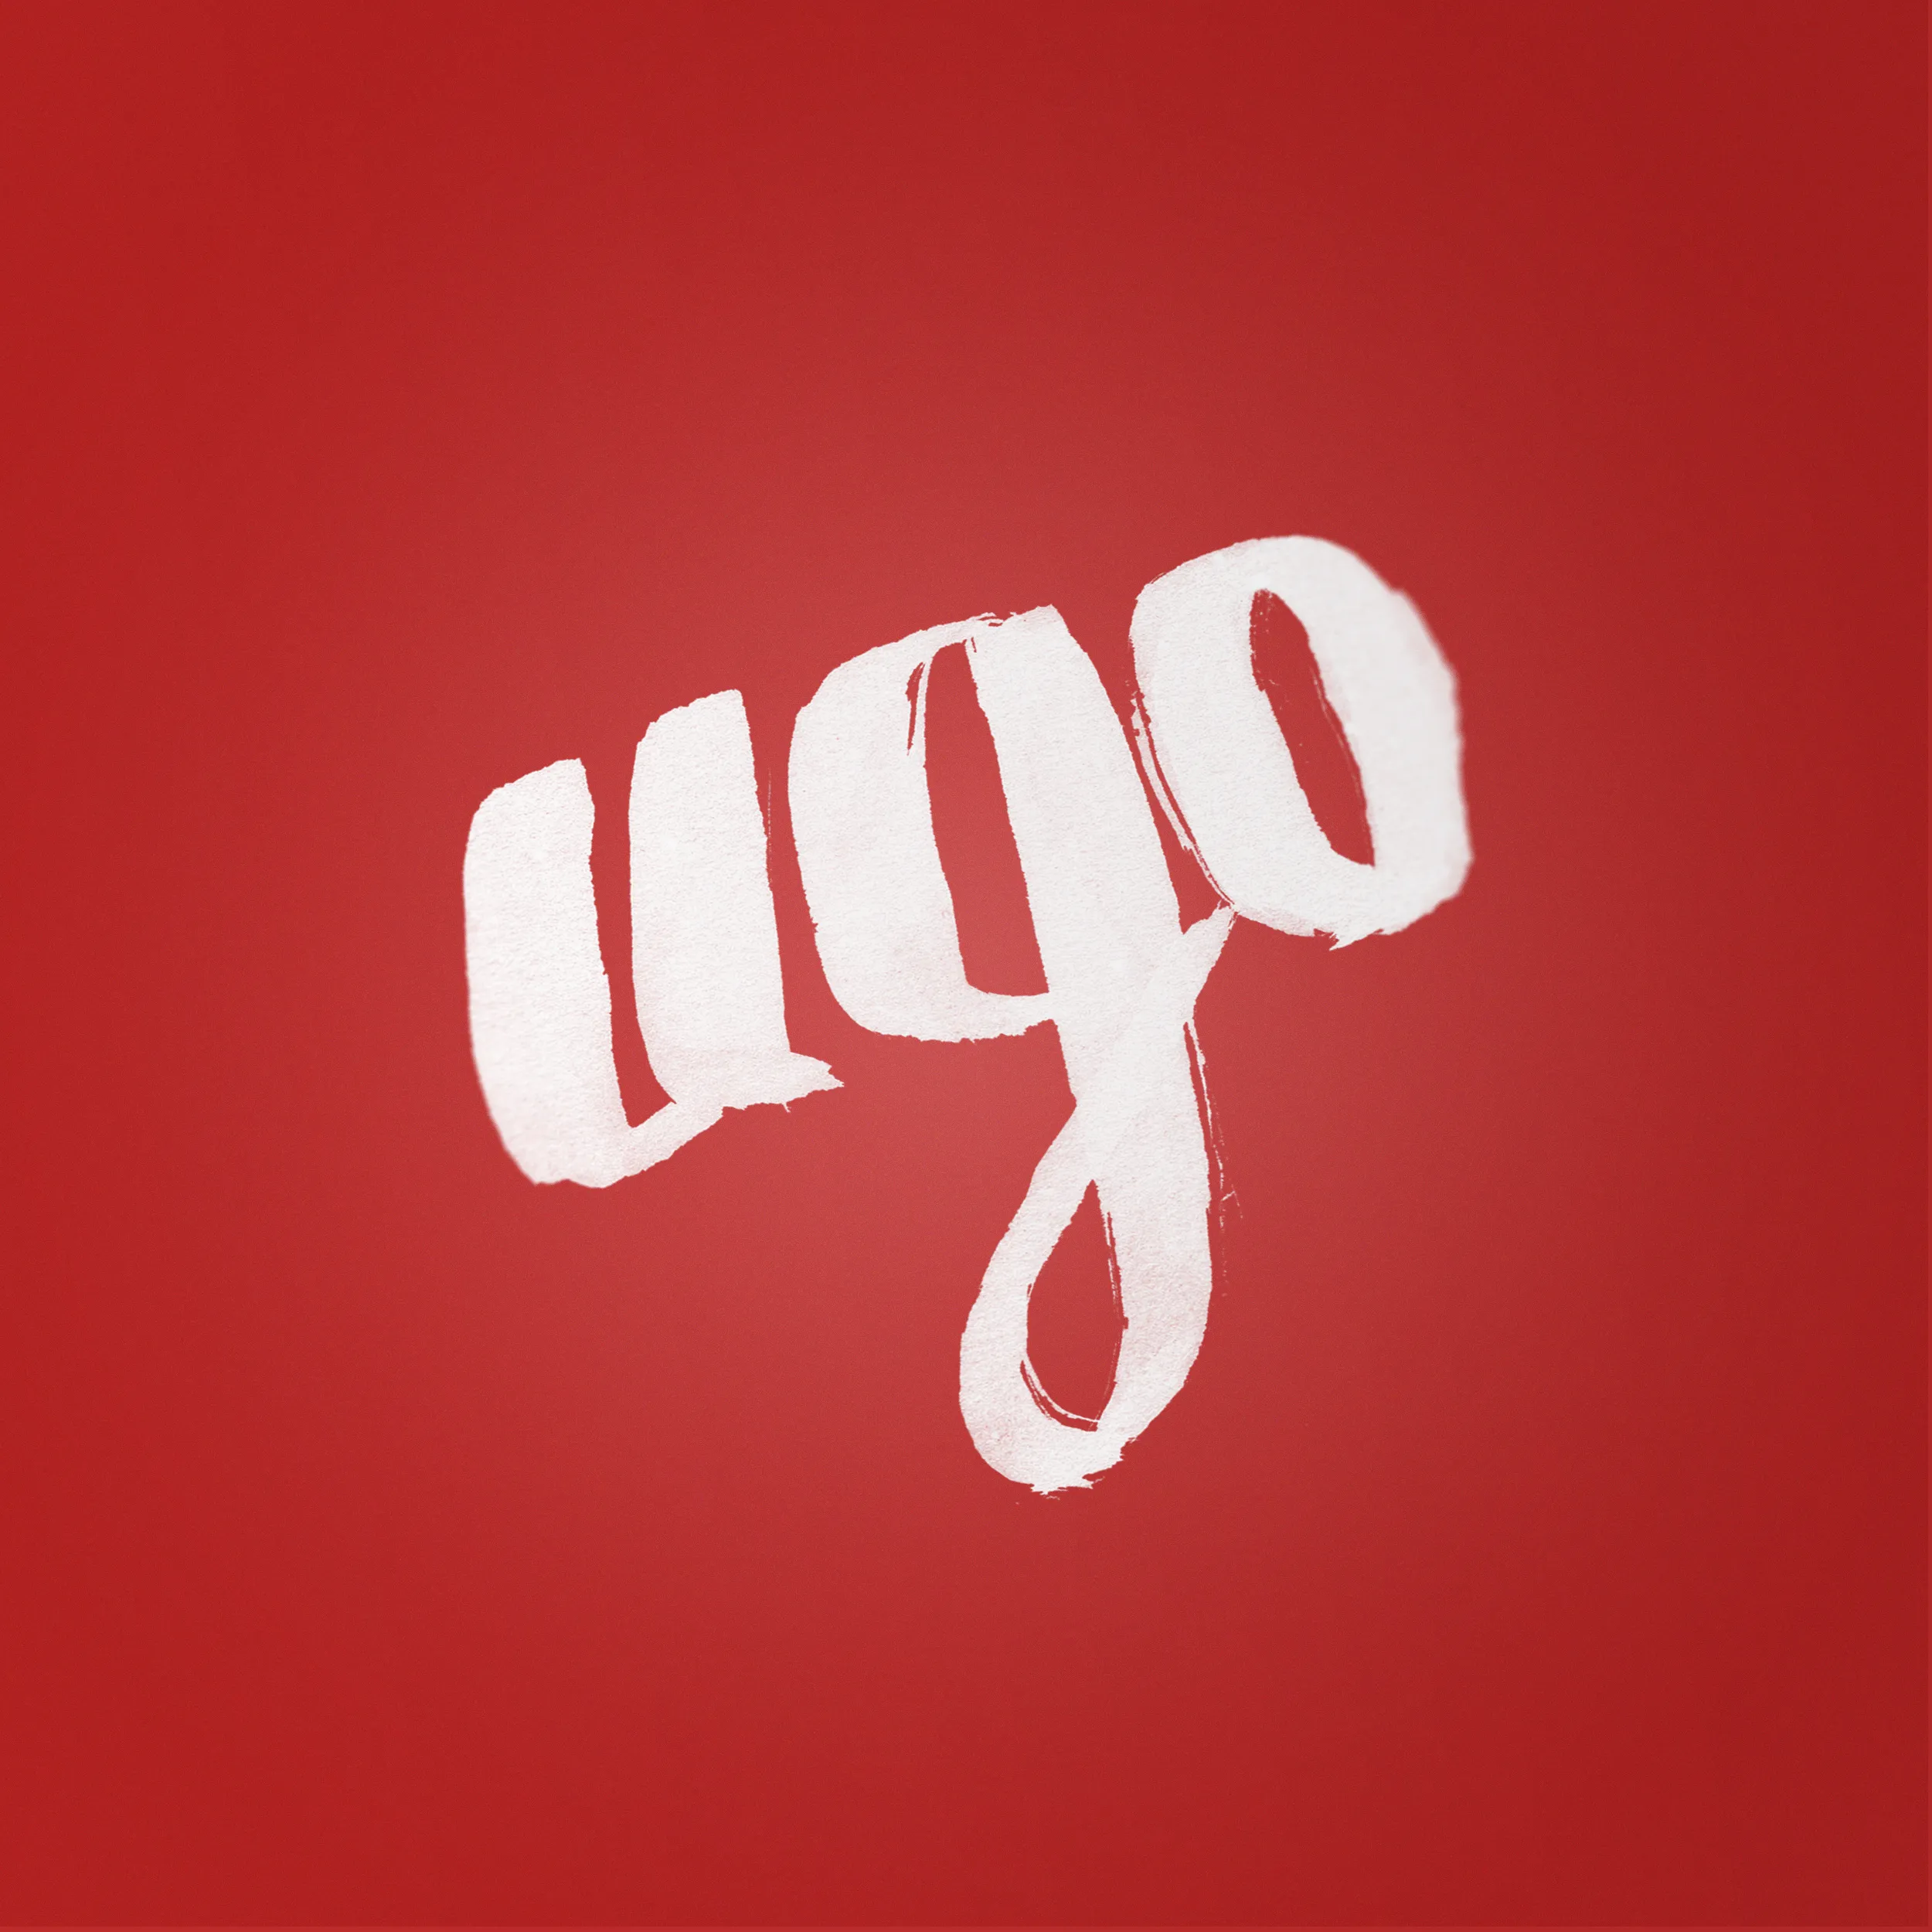 projet : Ugo